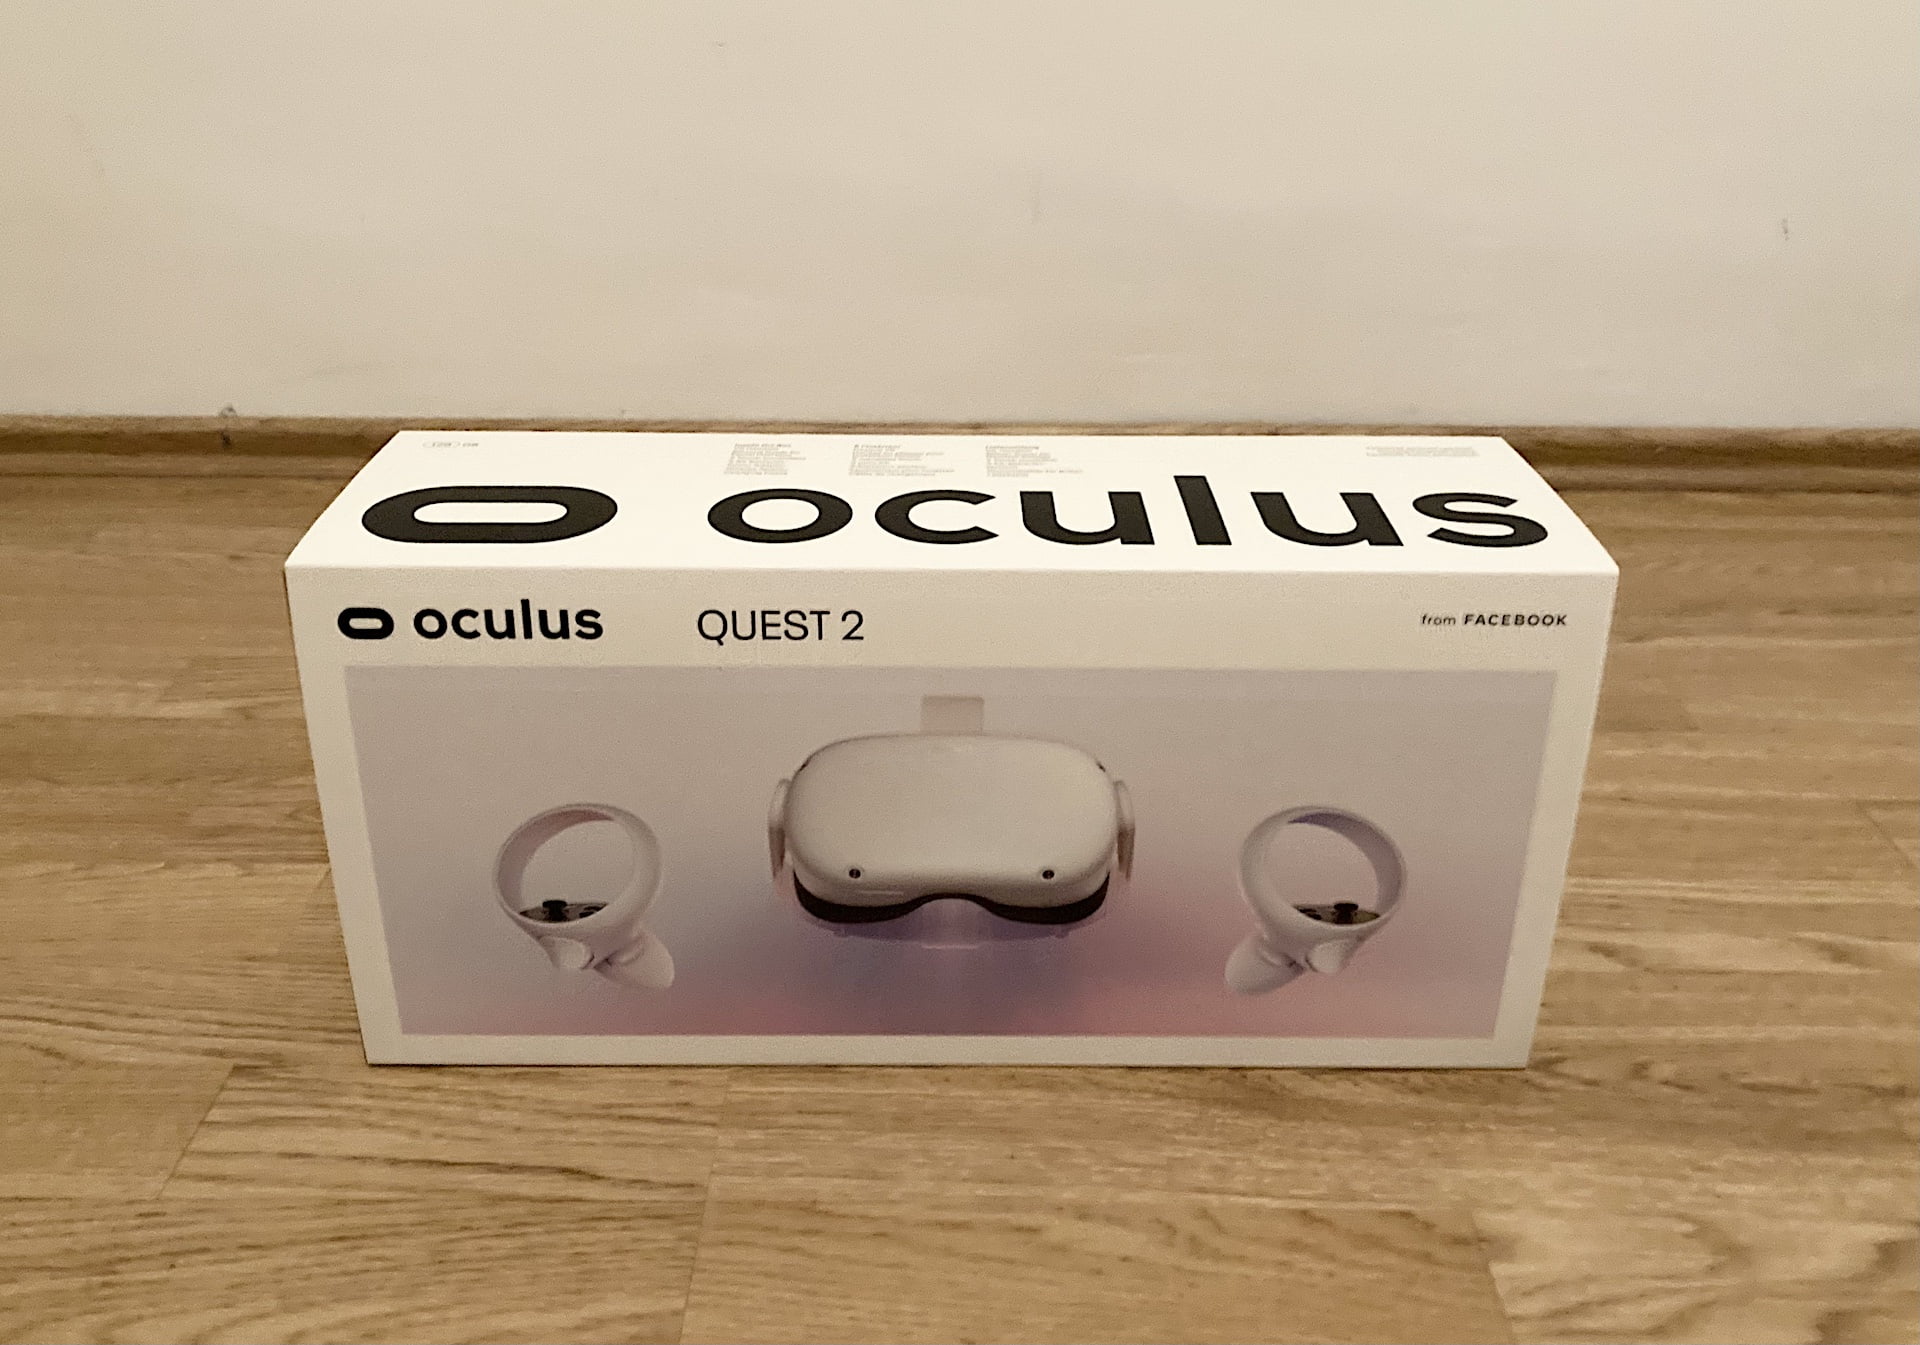 Meta übernimmt Oculus: So verschwindet die Marke